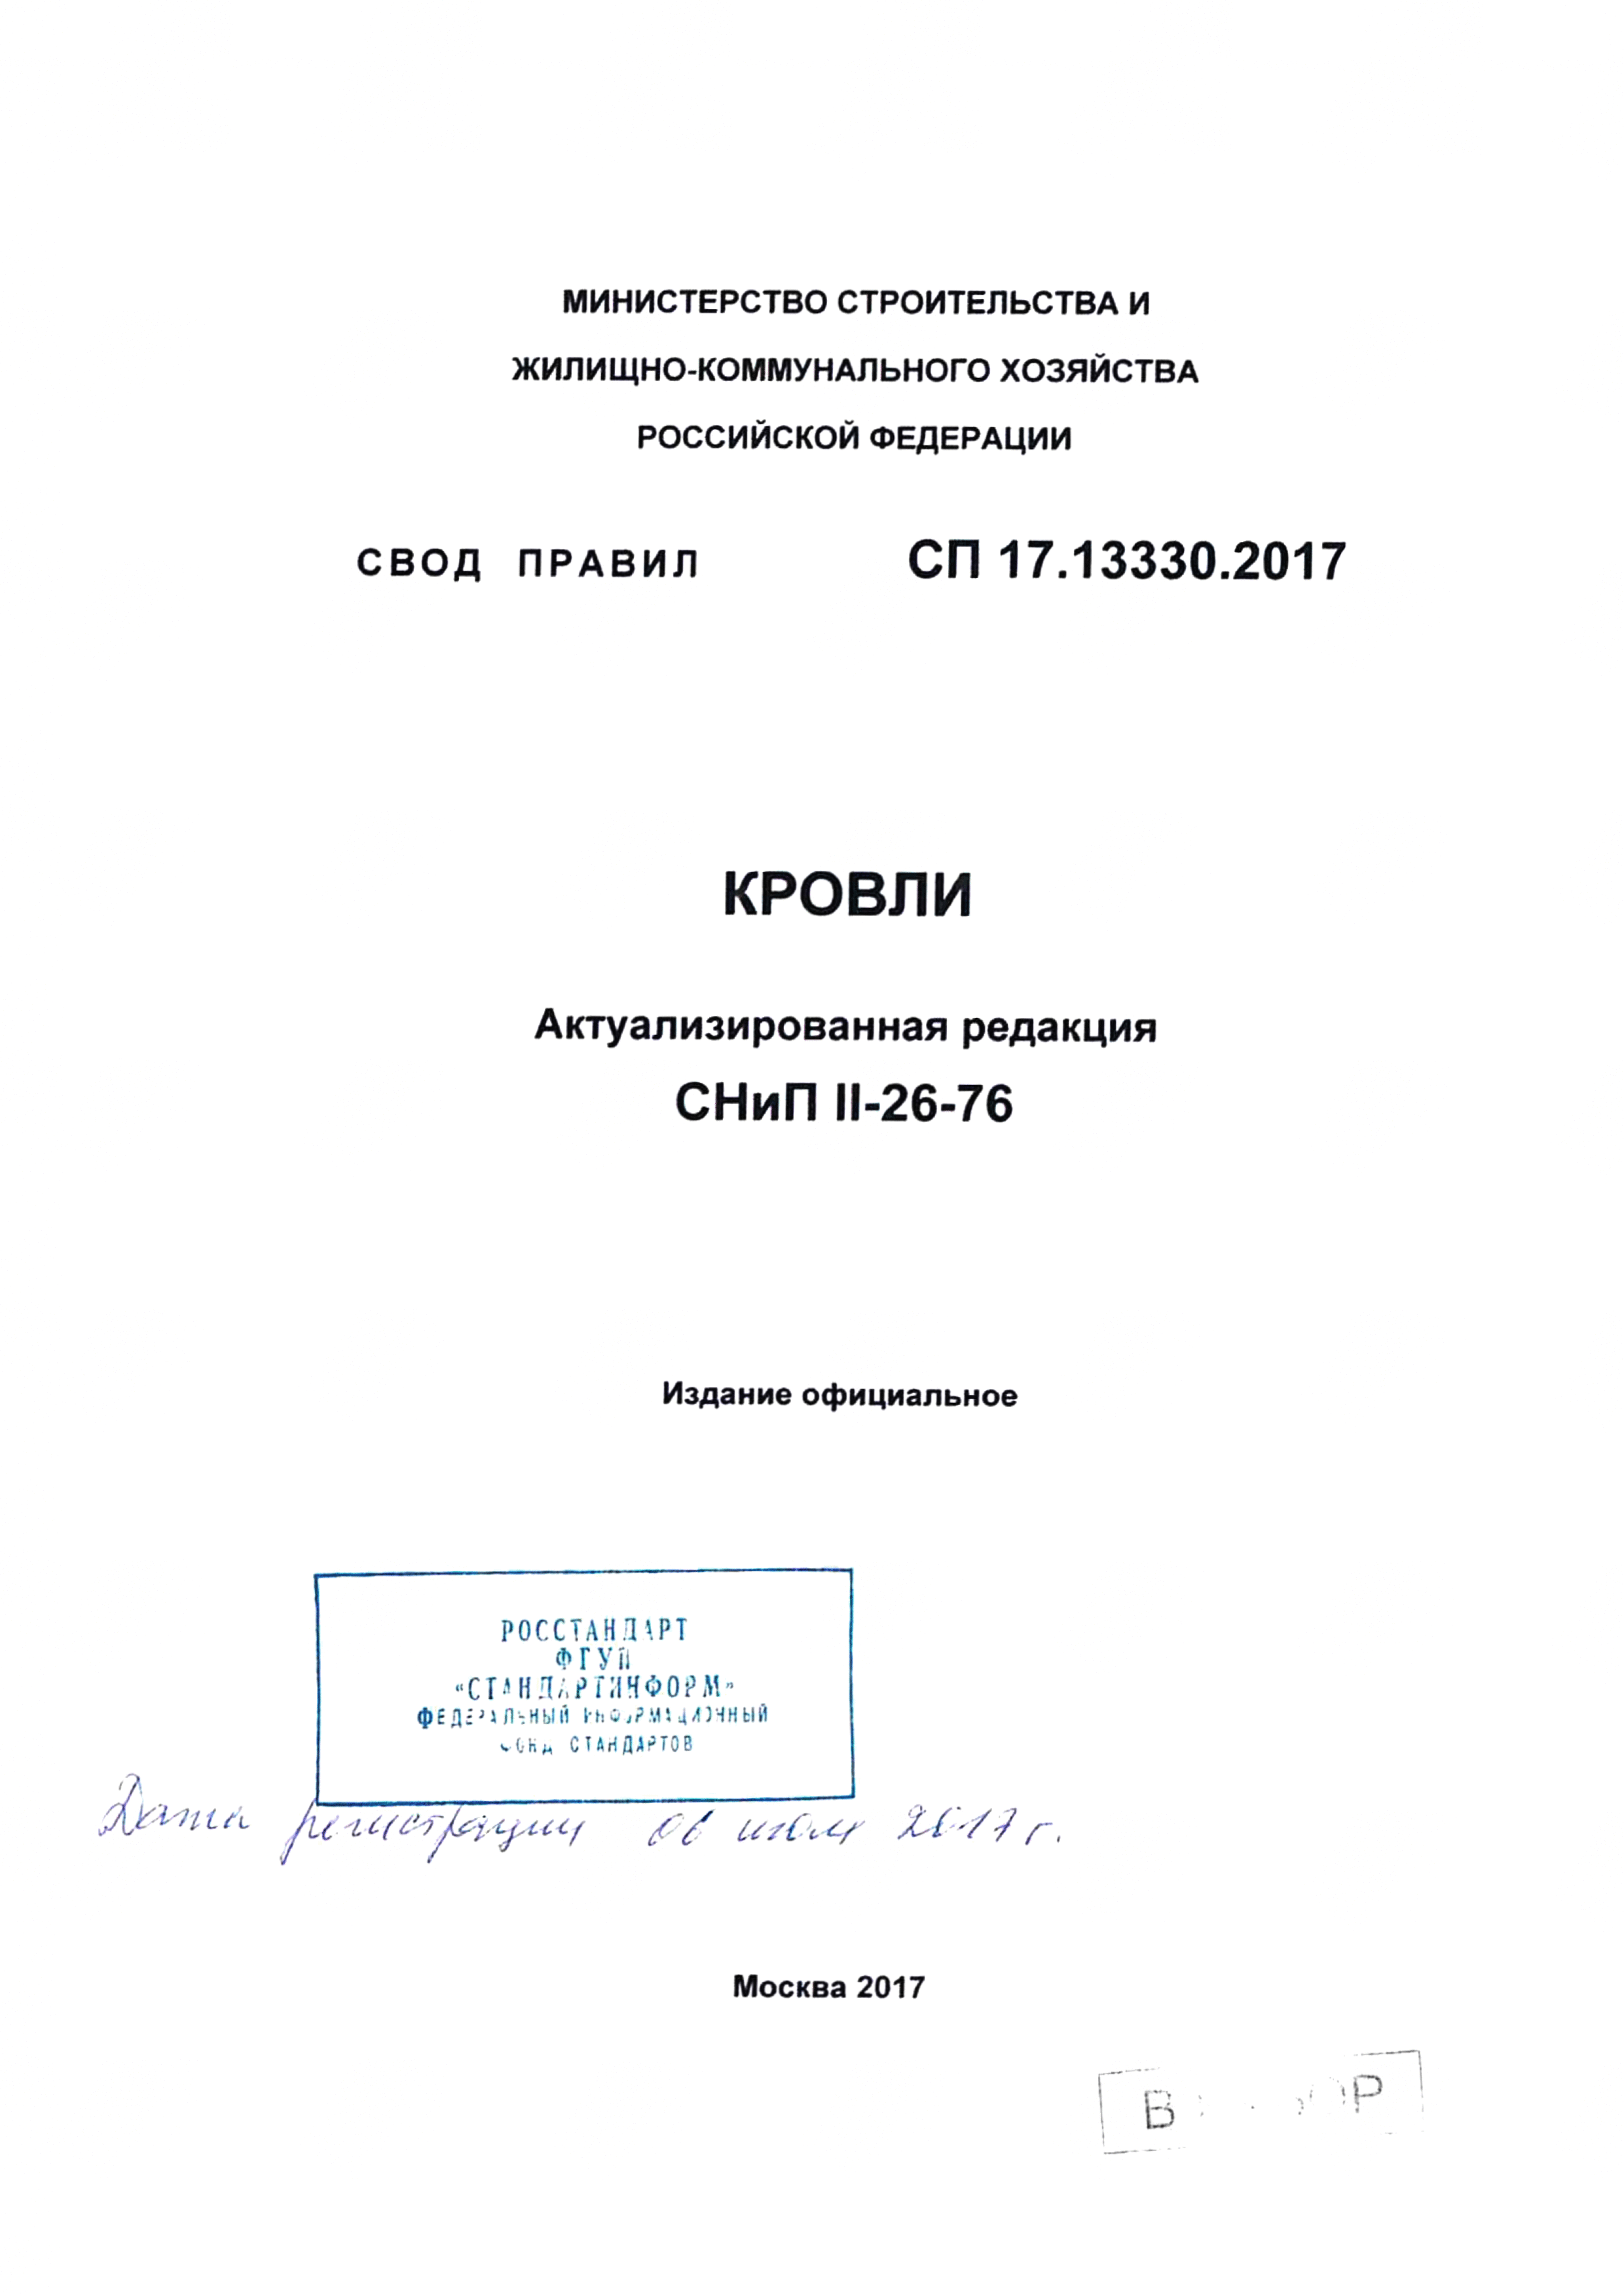 СП 17.13330.2017